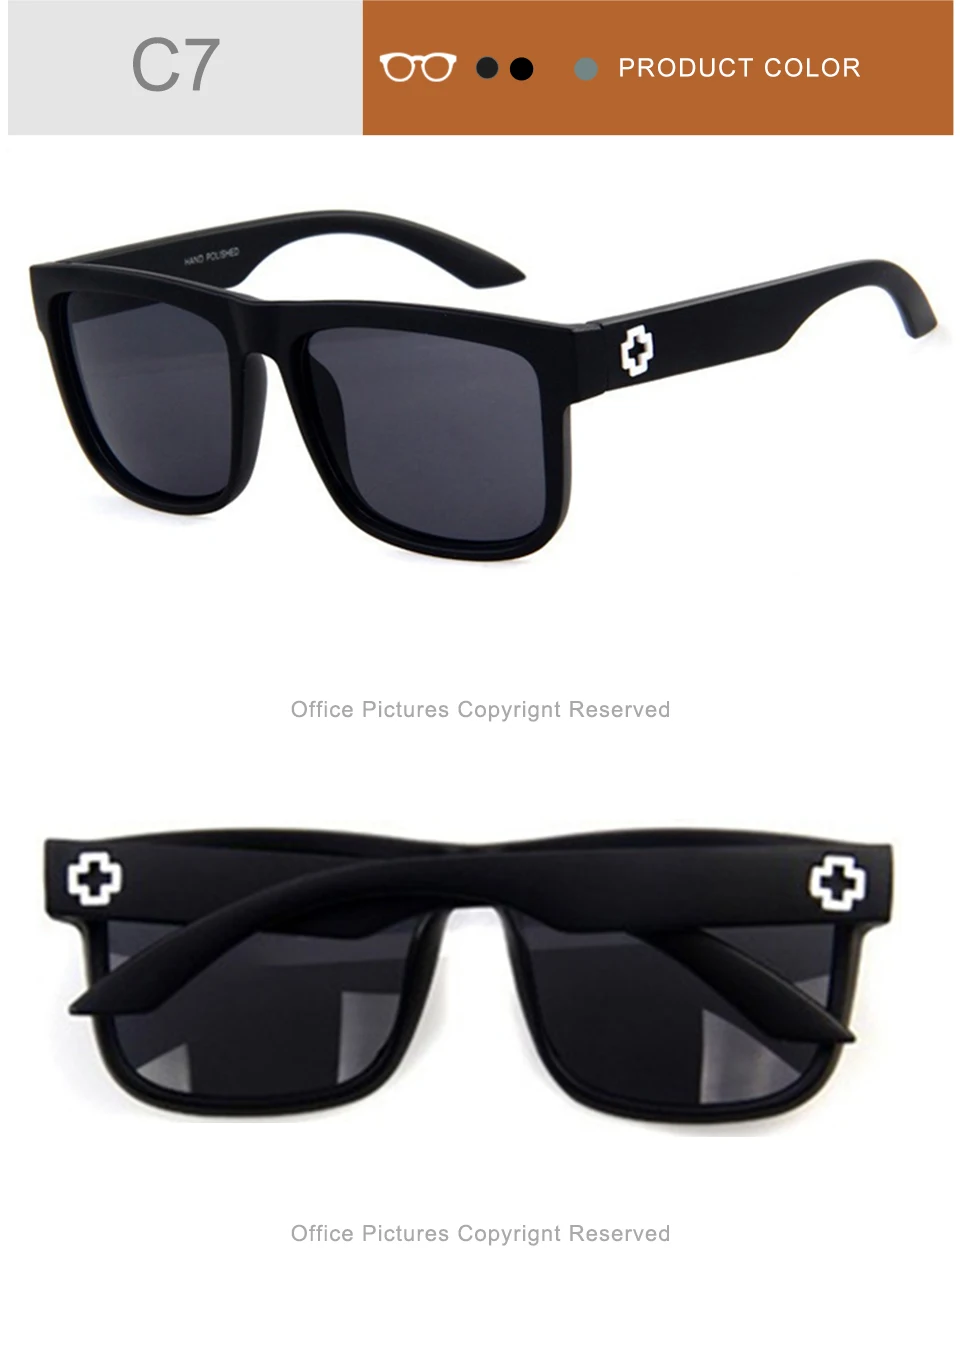 WANMEI. DS солнцезащитные очки высокого качества мужские и женские брендовые дизайнерские очки Зеркальные Солнцезащитные очки Модные Gafas Oculos De Sol UV400 классические